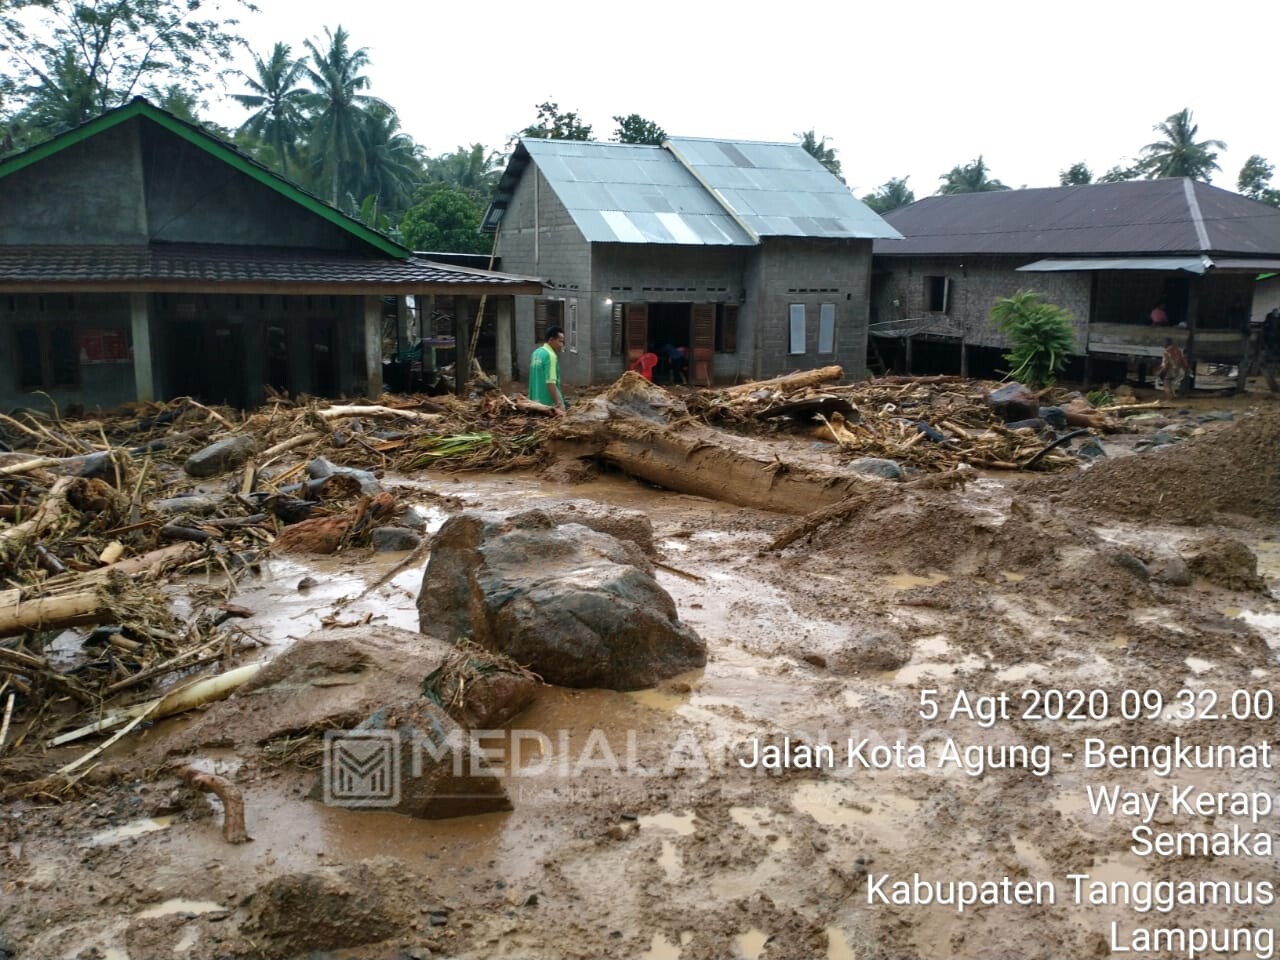 Sekitar 350 Rumah Terdampak Banjir Bandang Semaka Tanggamus